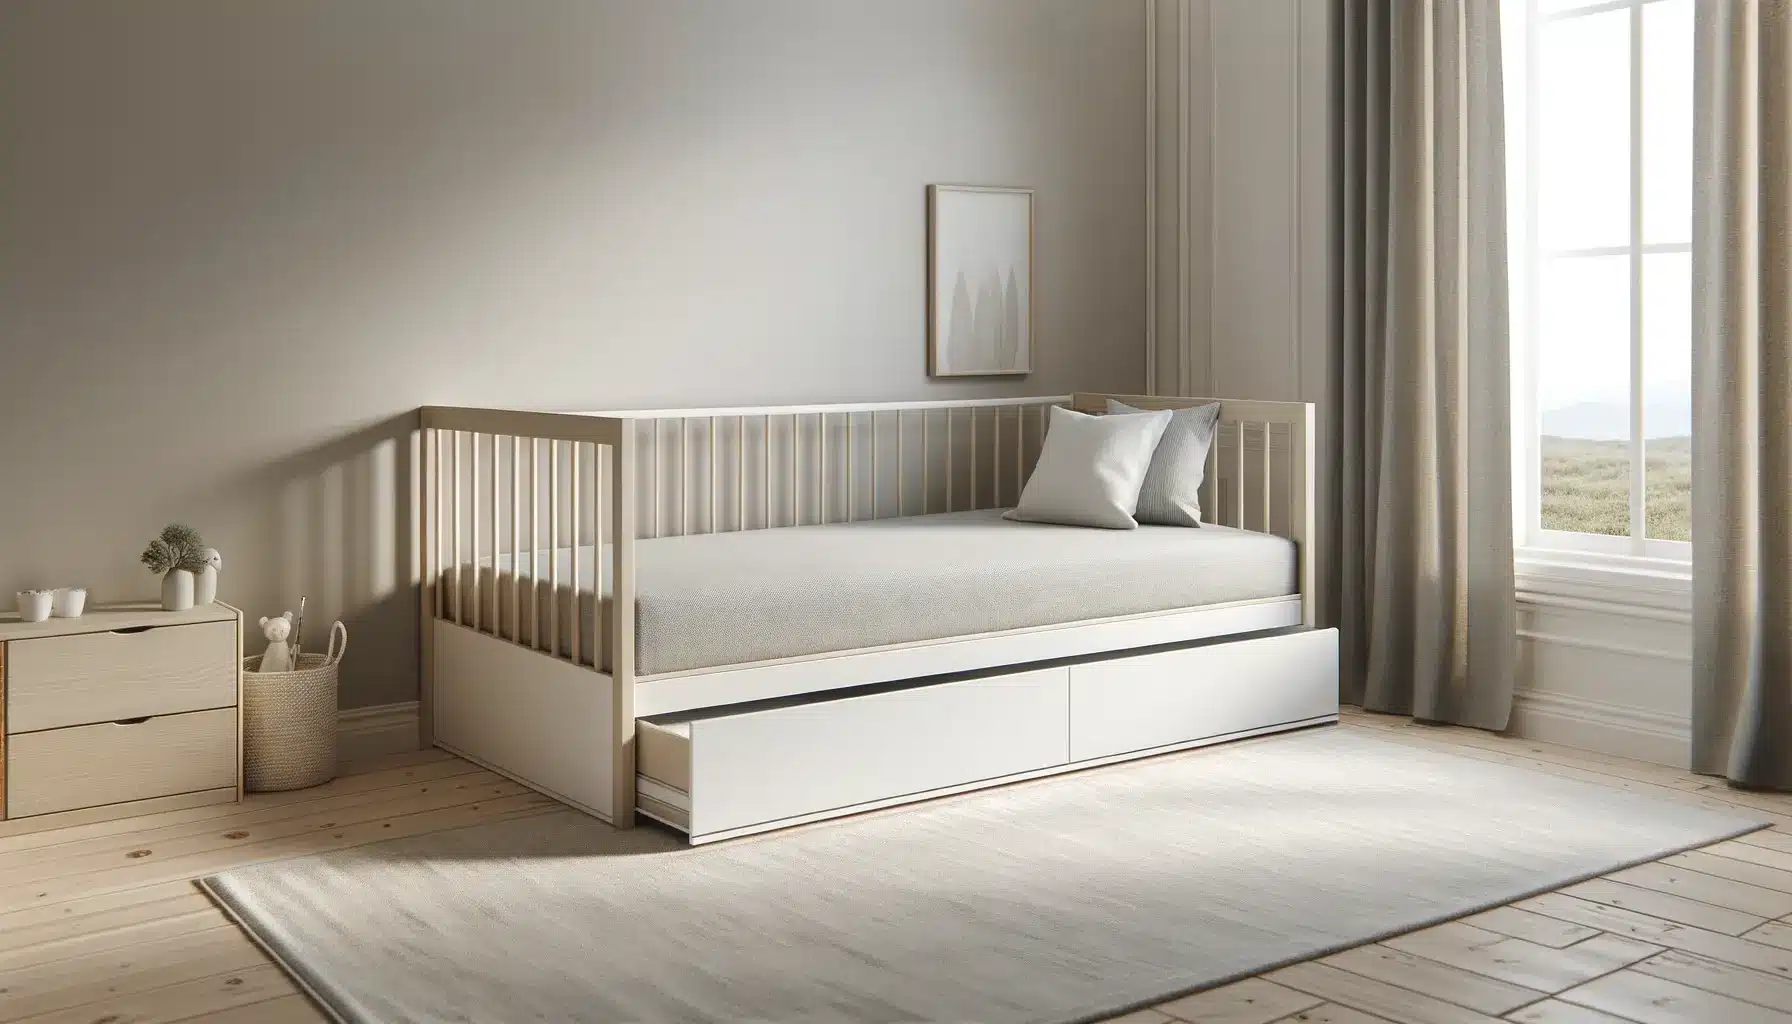 Pourquoi acheter un lit gigogne pour votre enfant ?